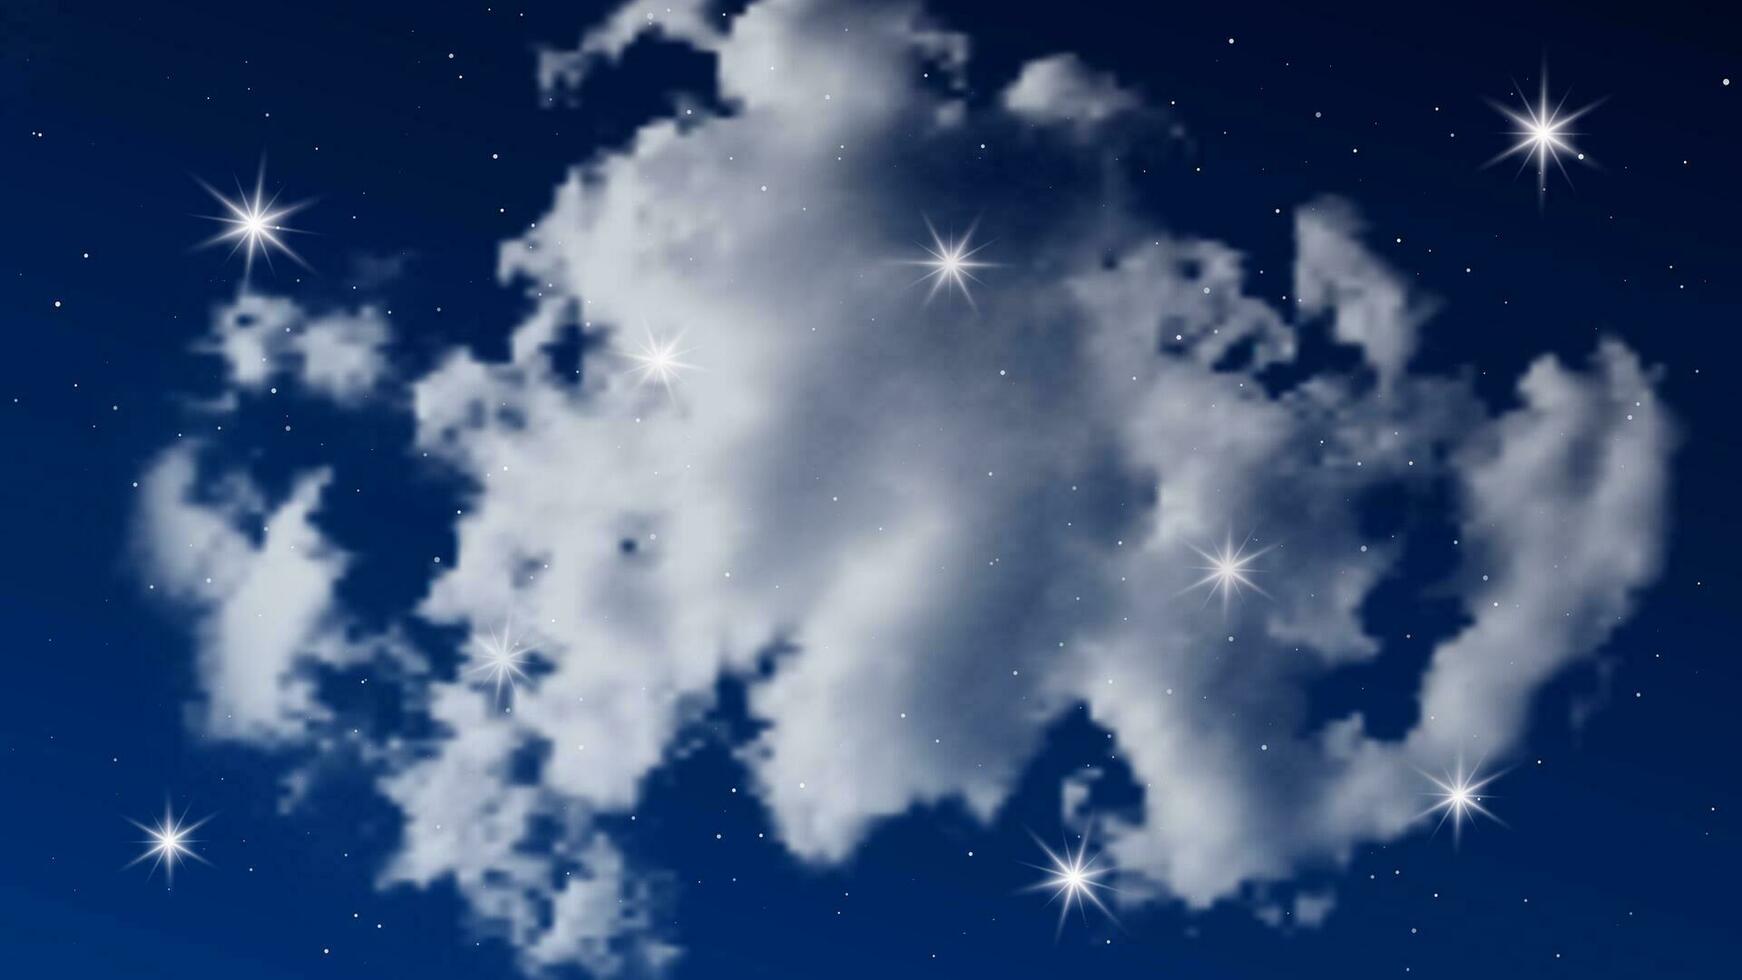 natt himmel med moln och många stjärnor. abstrakt natur bakgrund med stardust i djup universum. vektor illustration.